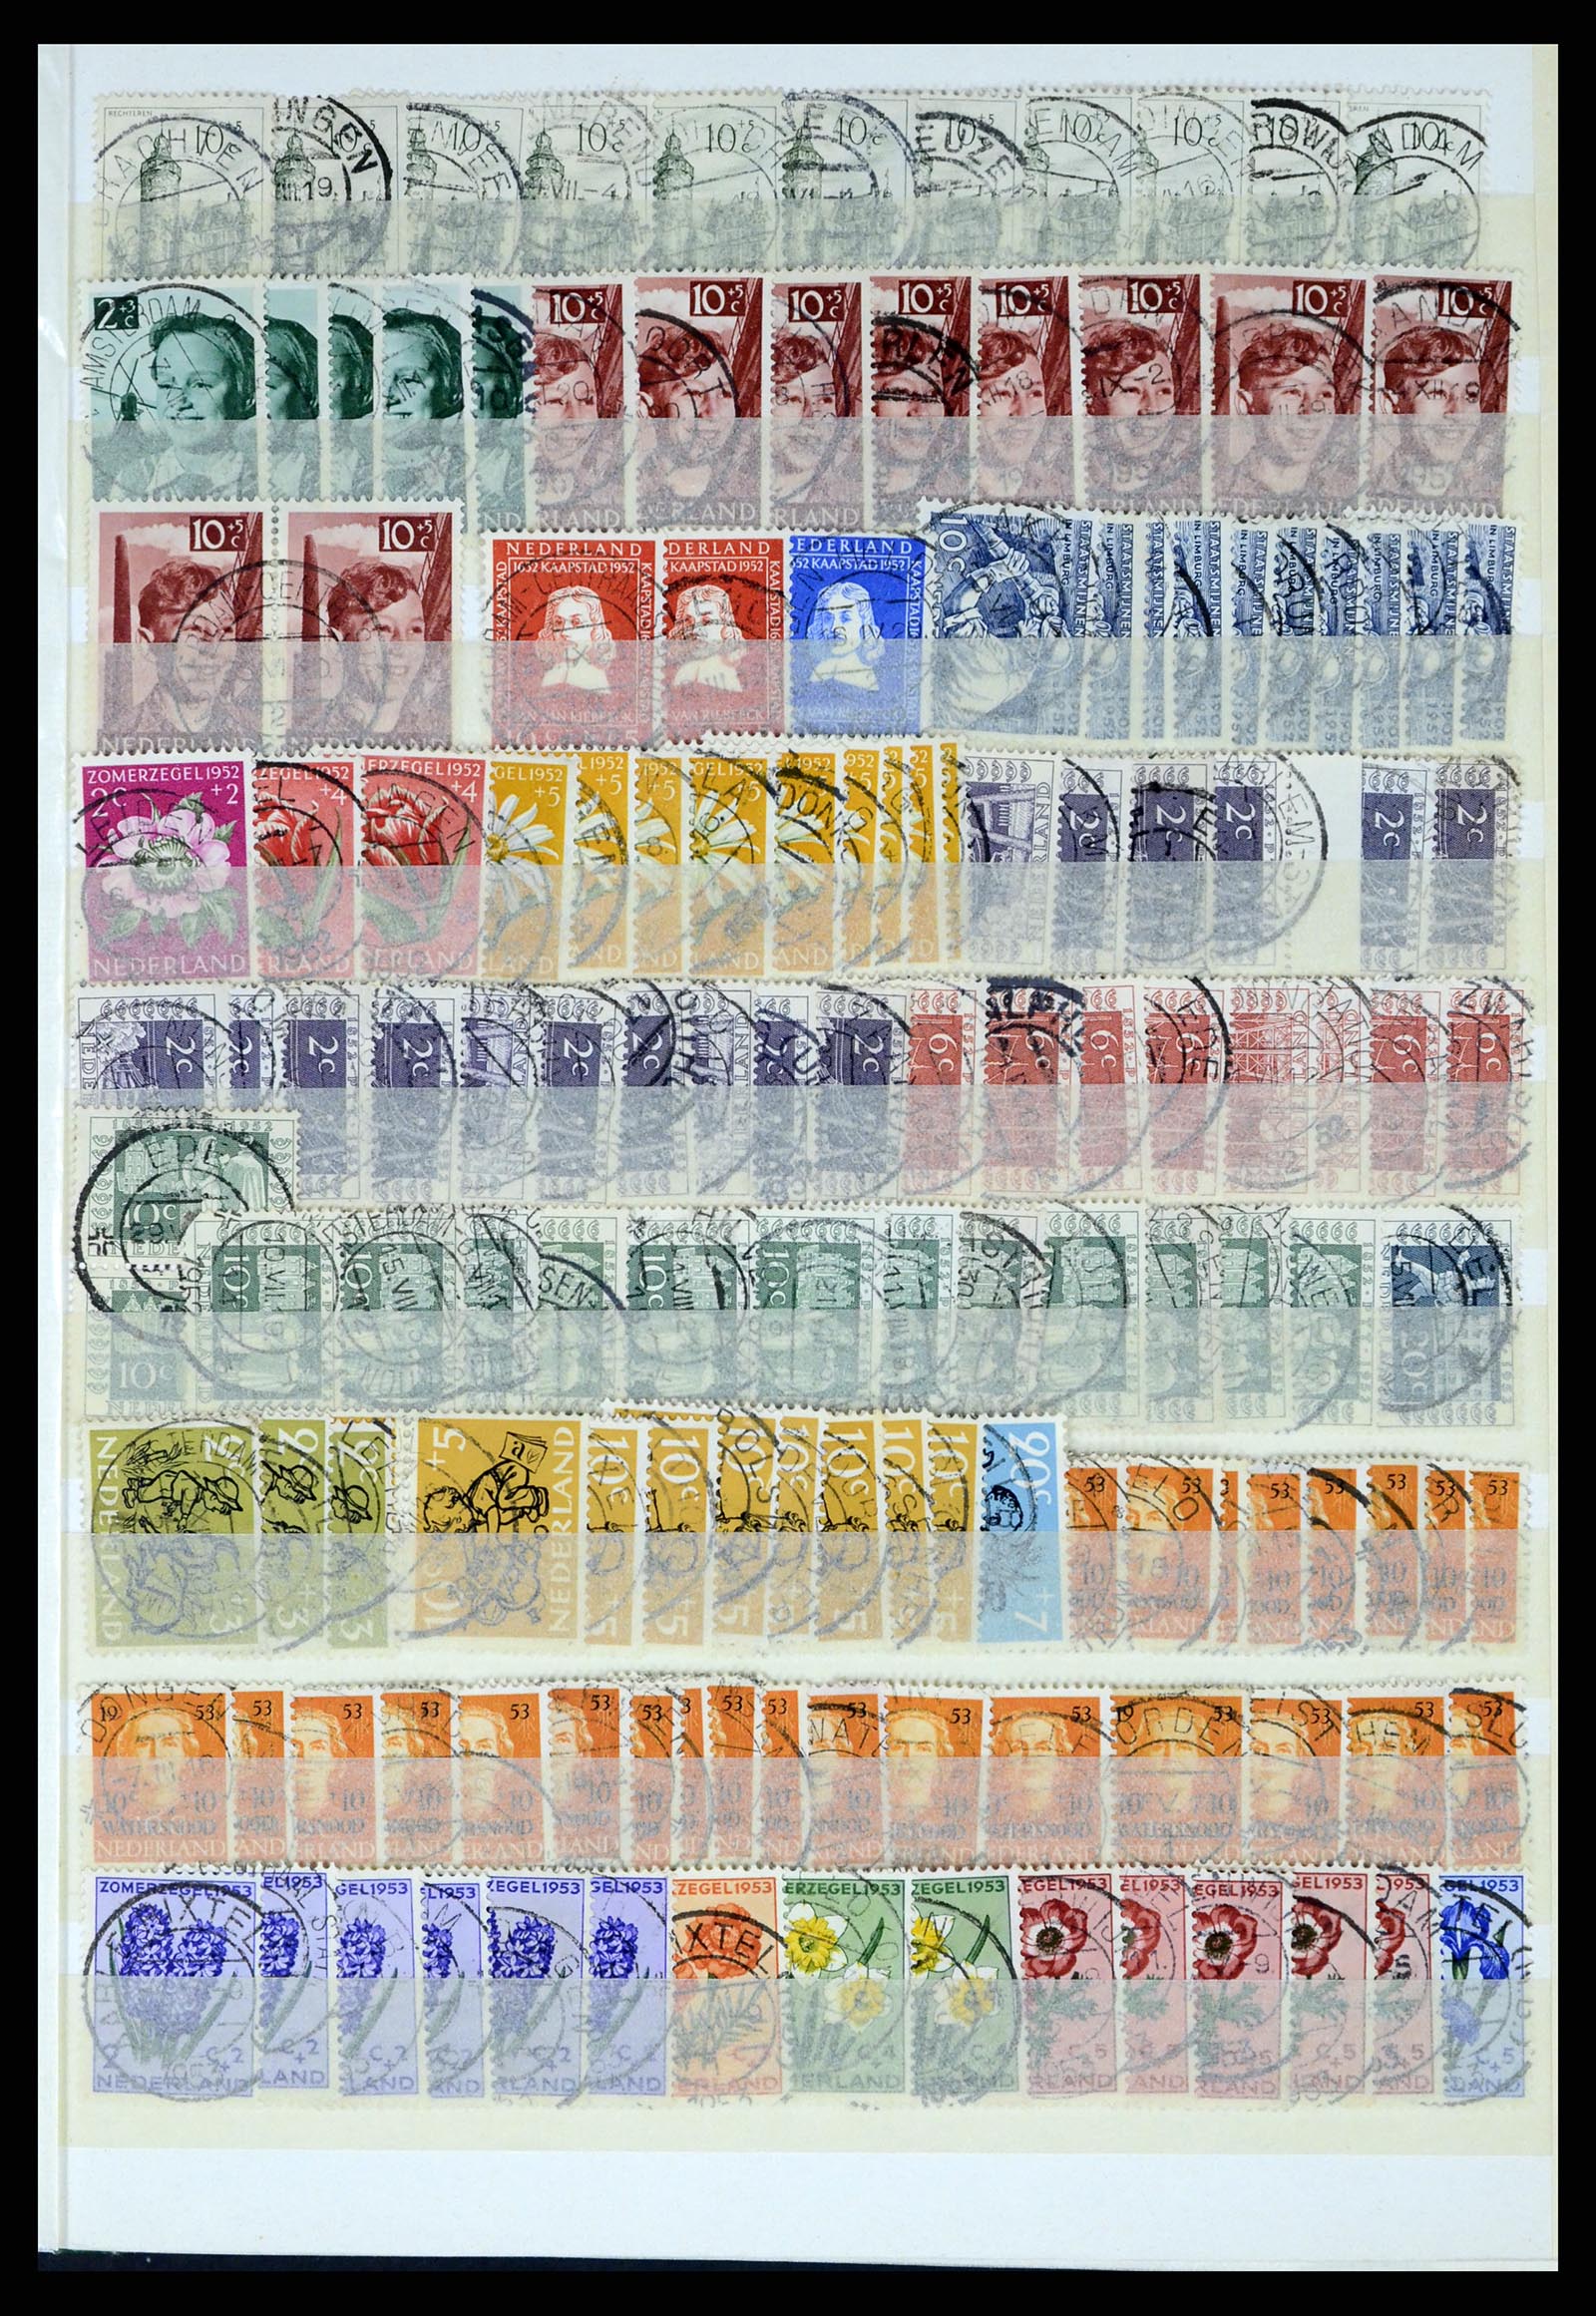 37424 047 - Postzegelverzameling 37424 Nederland kortebalk stempels.